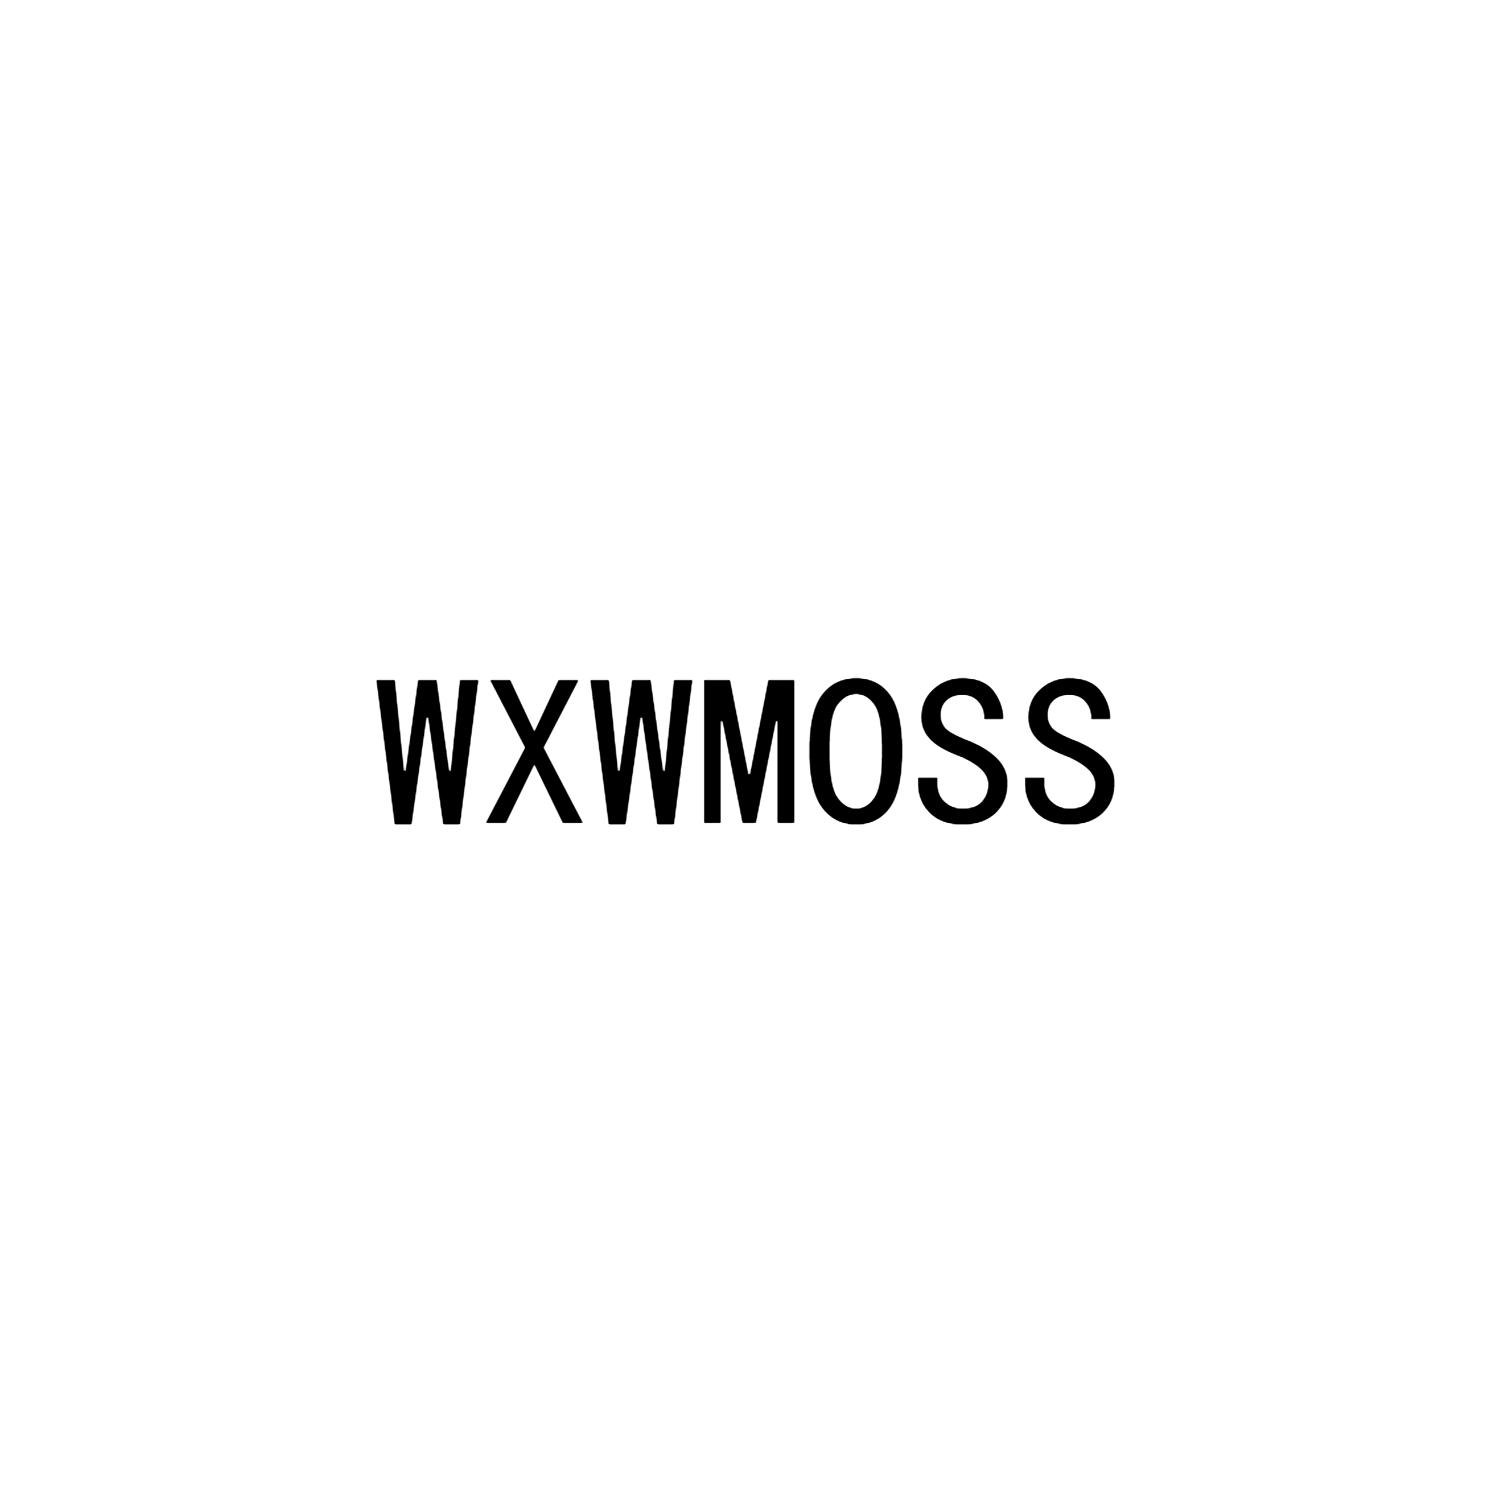 WXWMOSS